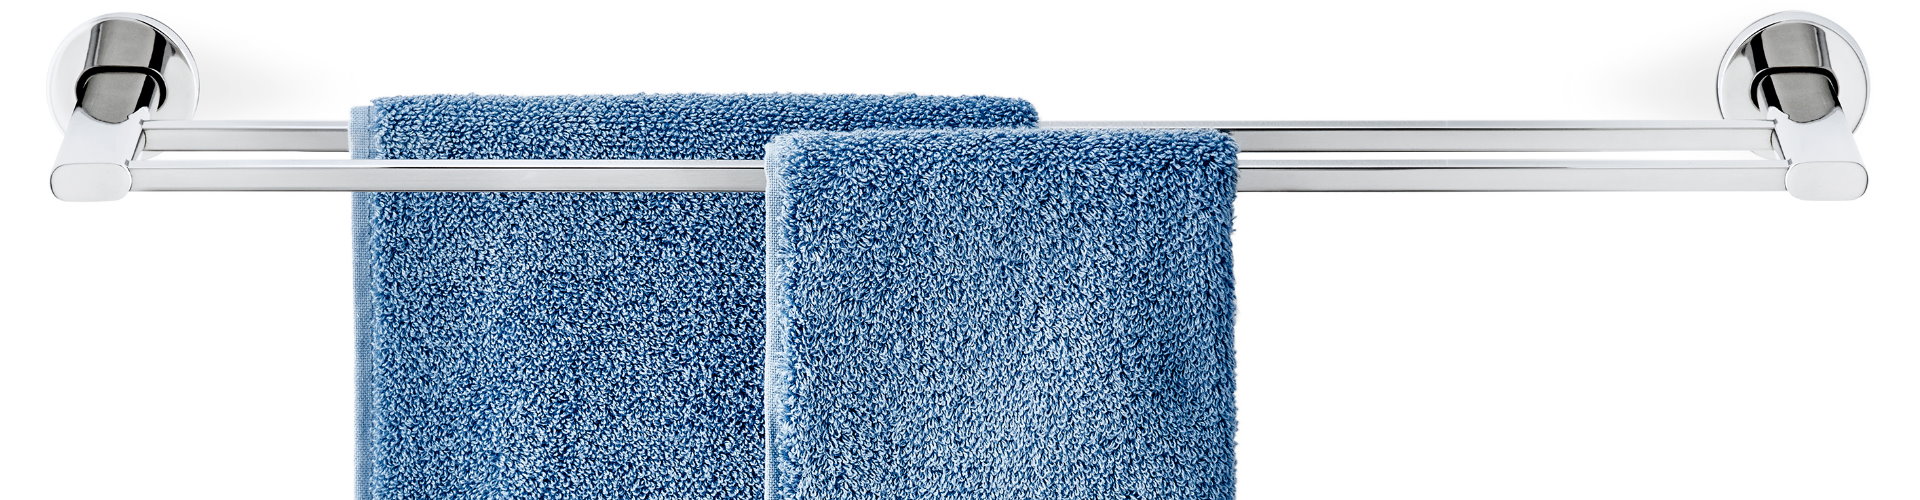 homebits towel rails 